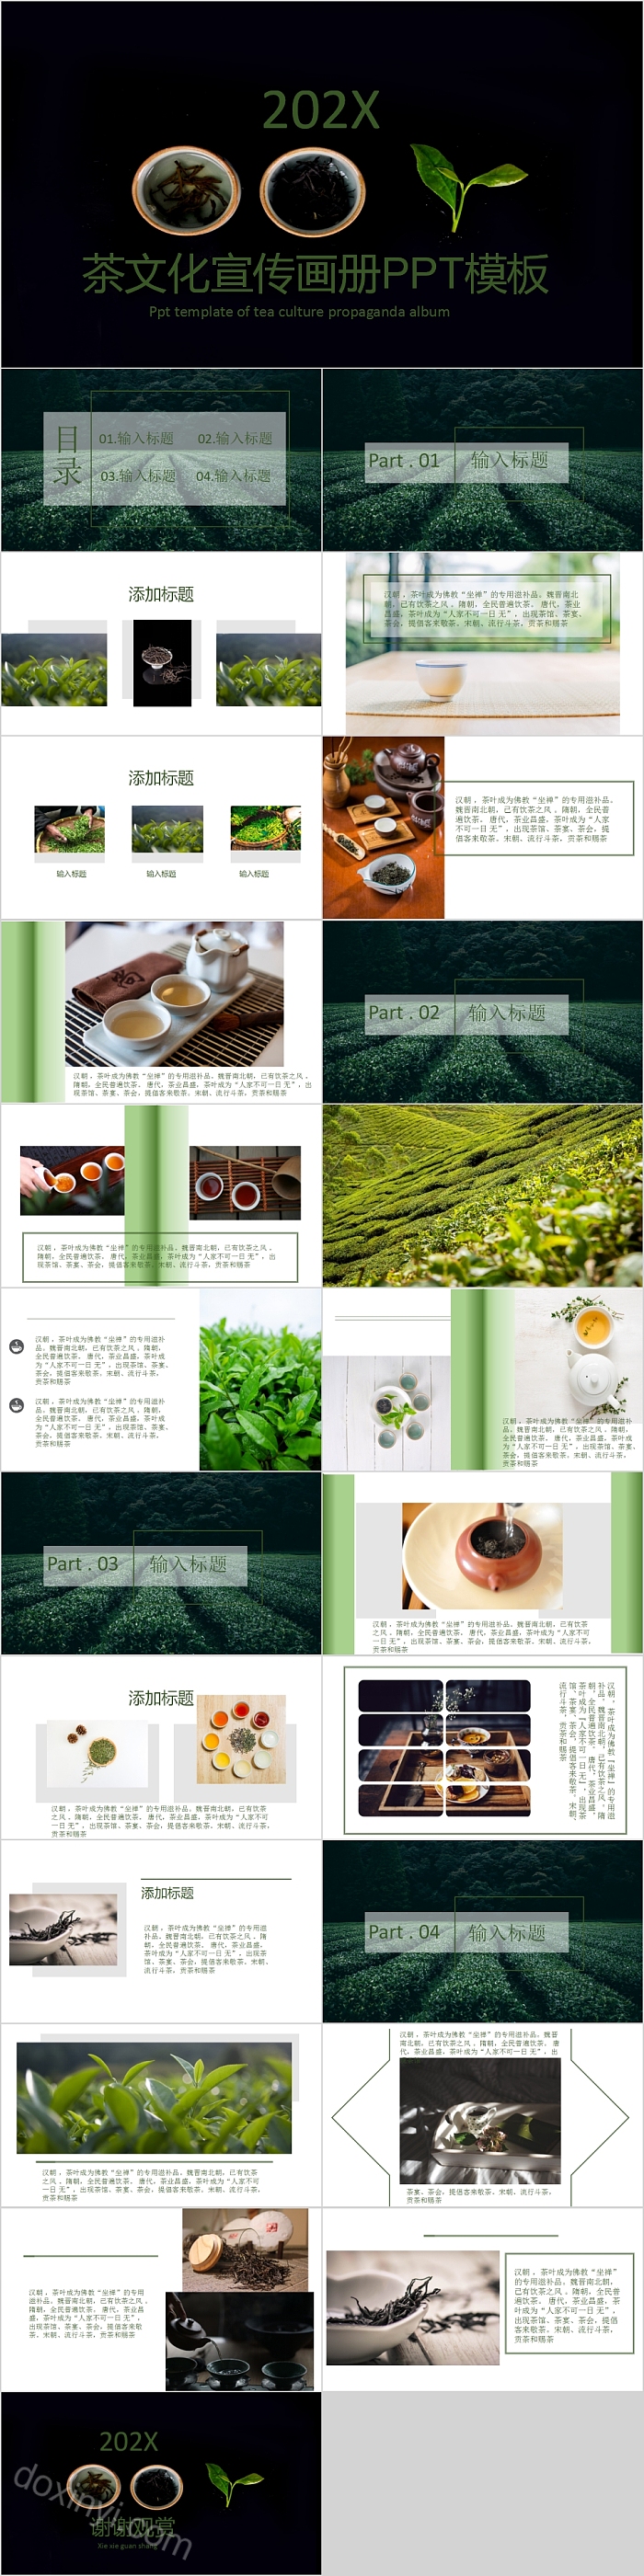 简约大气茶文化宣传画册PPT模板